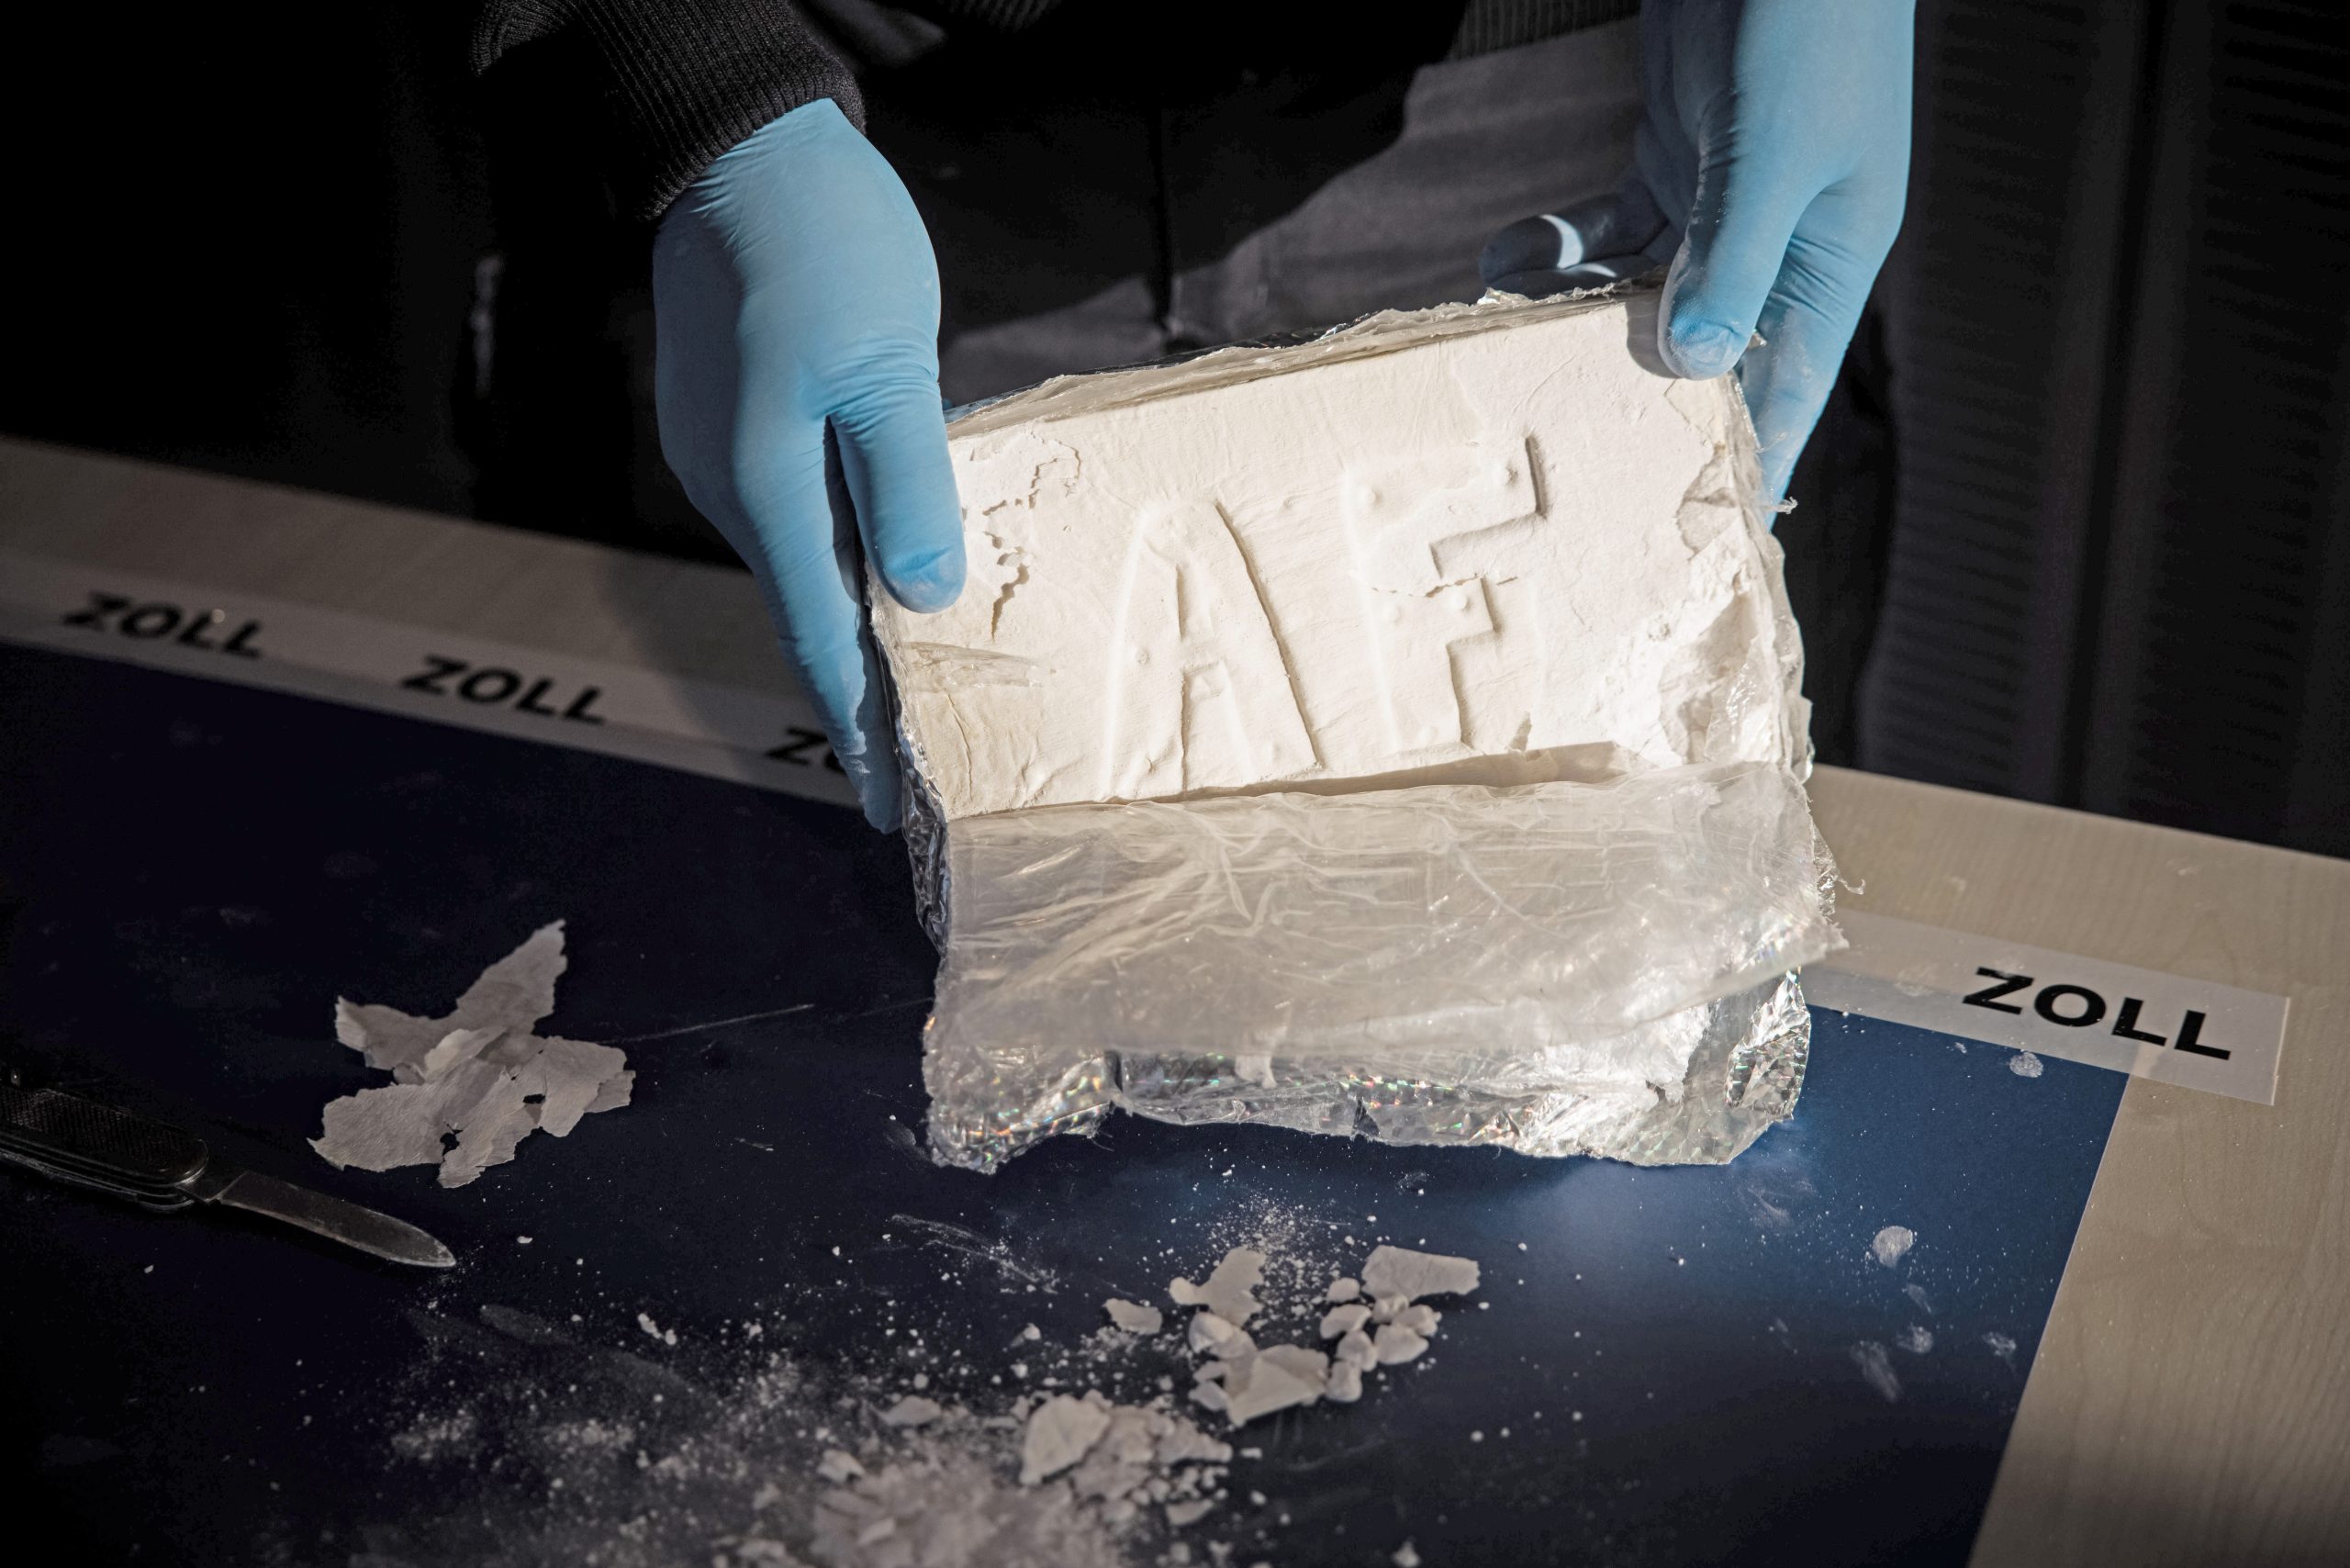 Der Hamburger Zoll hat im Jahr 2021 mehr als 18 Tonnen Kokain sichergestellt. (Symbolbild)